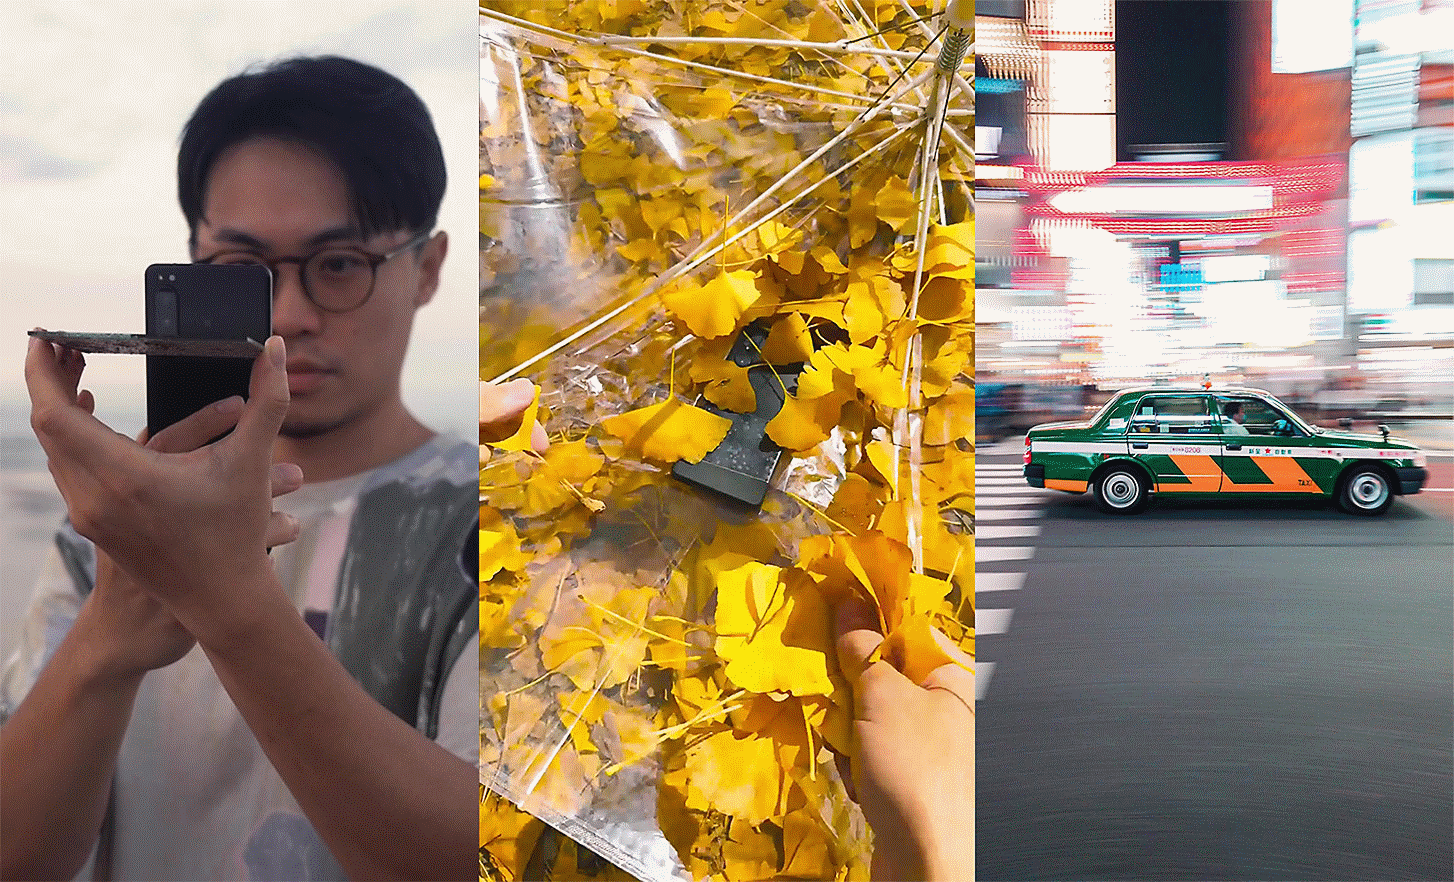 Τρία πορτραίτα δίπλα δίπλα, στα αριστερά άτομο που βγάζει μια φωτογραφία, στη μέση εικόνα του τηλεφώνου ανάμεσα σε φύλλα και στα δεξιά αυτοκίνητο σε δρόμο της πόλης